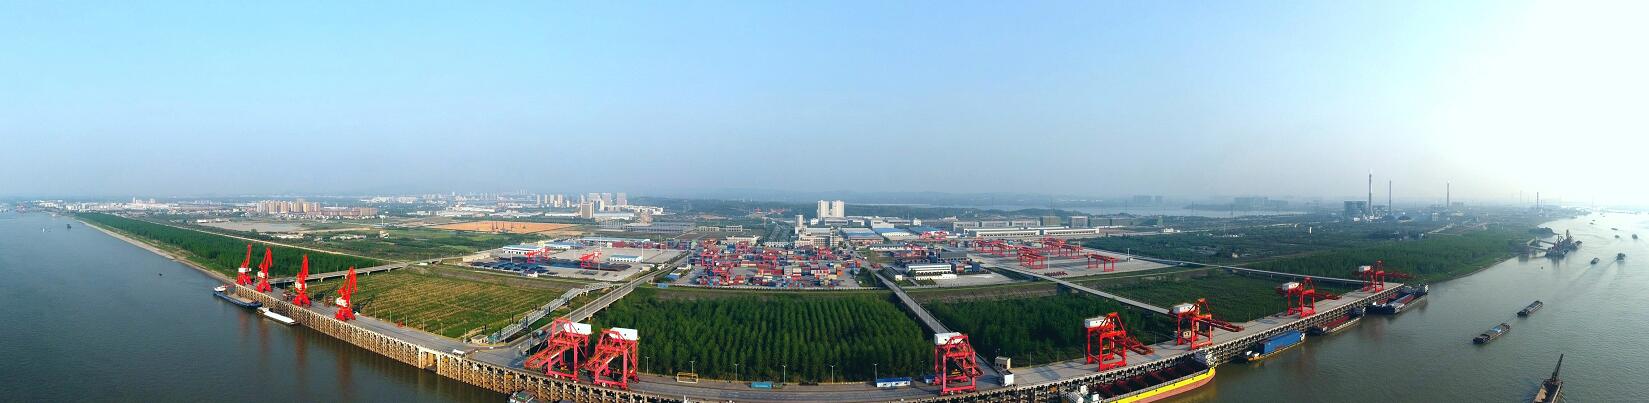 绿波春水向东流——湖南省港务集团的绿色梦想